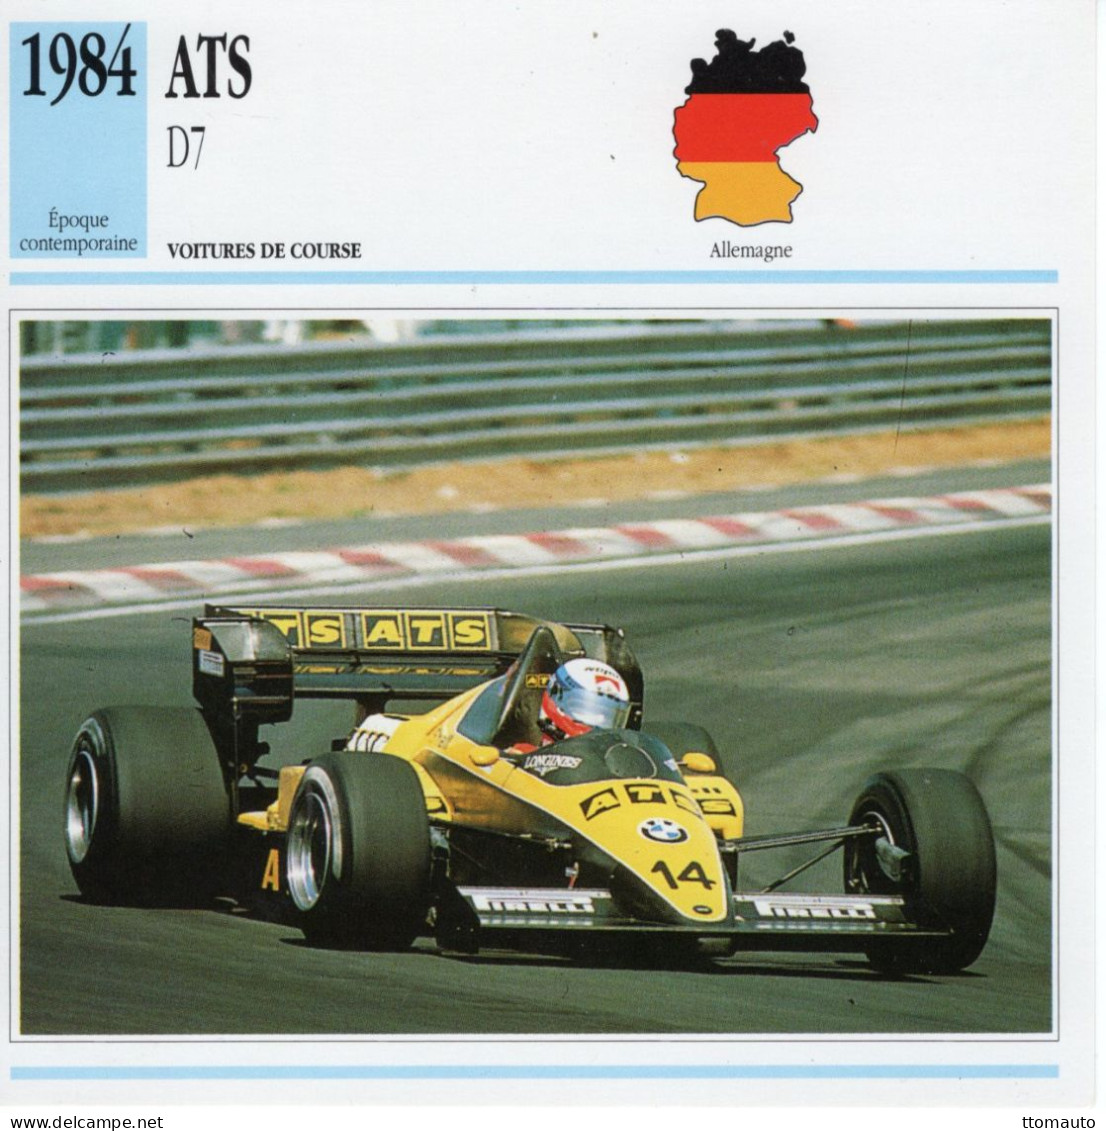 Fiche  -  Voiture De Course F1  -  ATS D7/01  (1984)  - Pilote: Manfred Winkelhock -  Carte De Collection - Coches